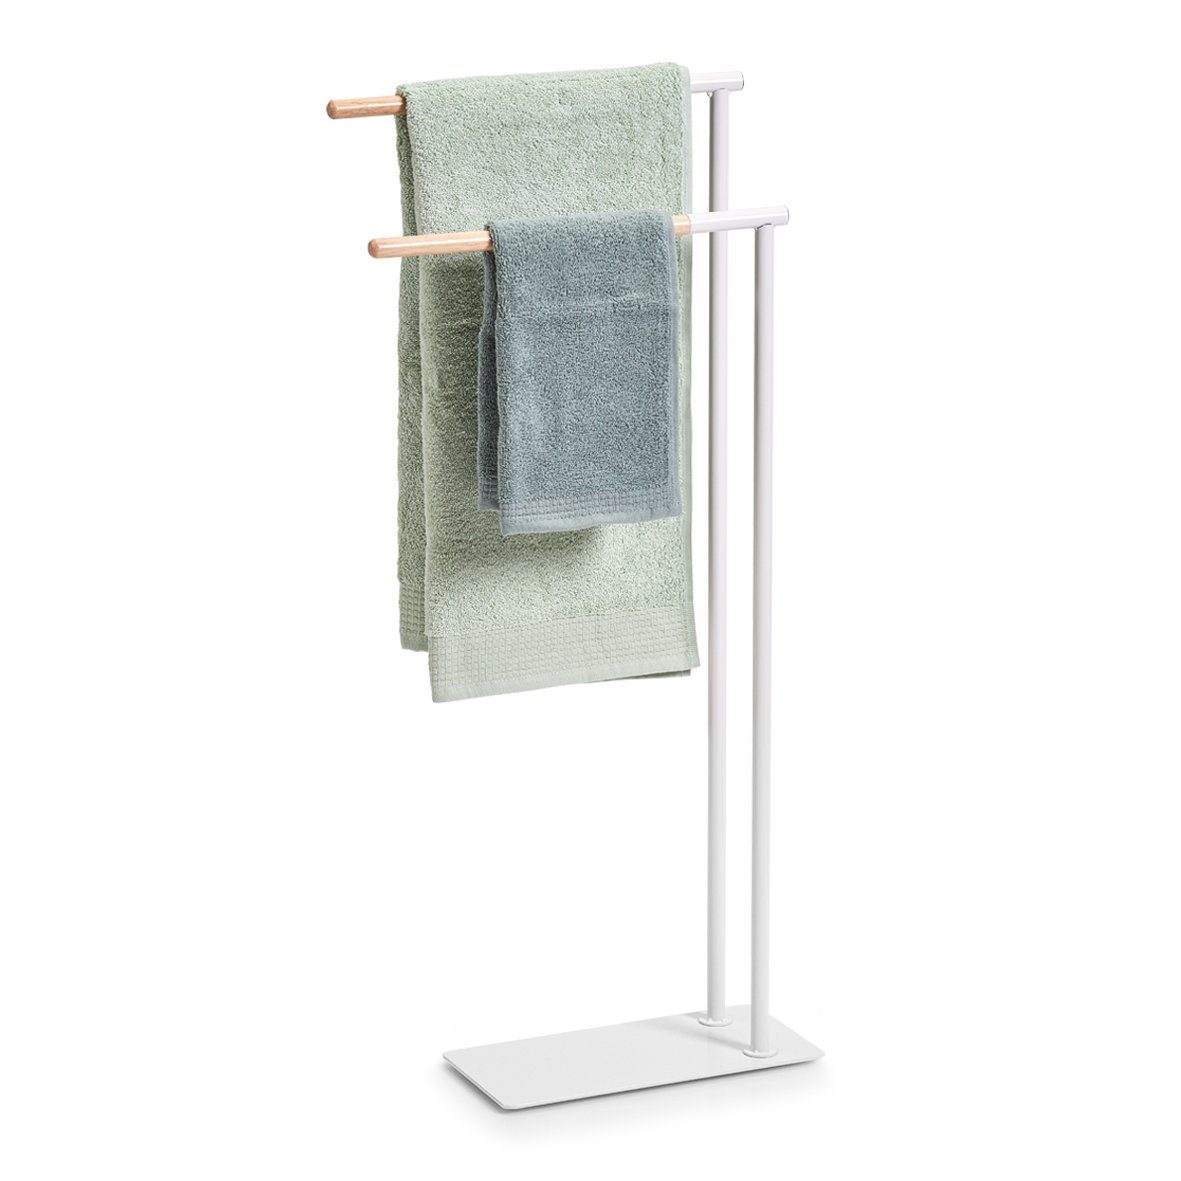 Zeller Present Handtuchhalter Handtuchständer, Metall/Gummibaum, weiß, 38,5 x x 15 cm 84